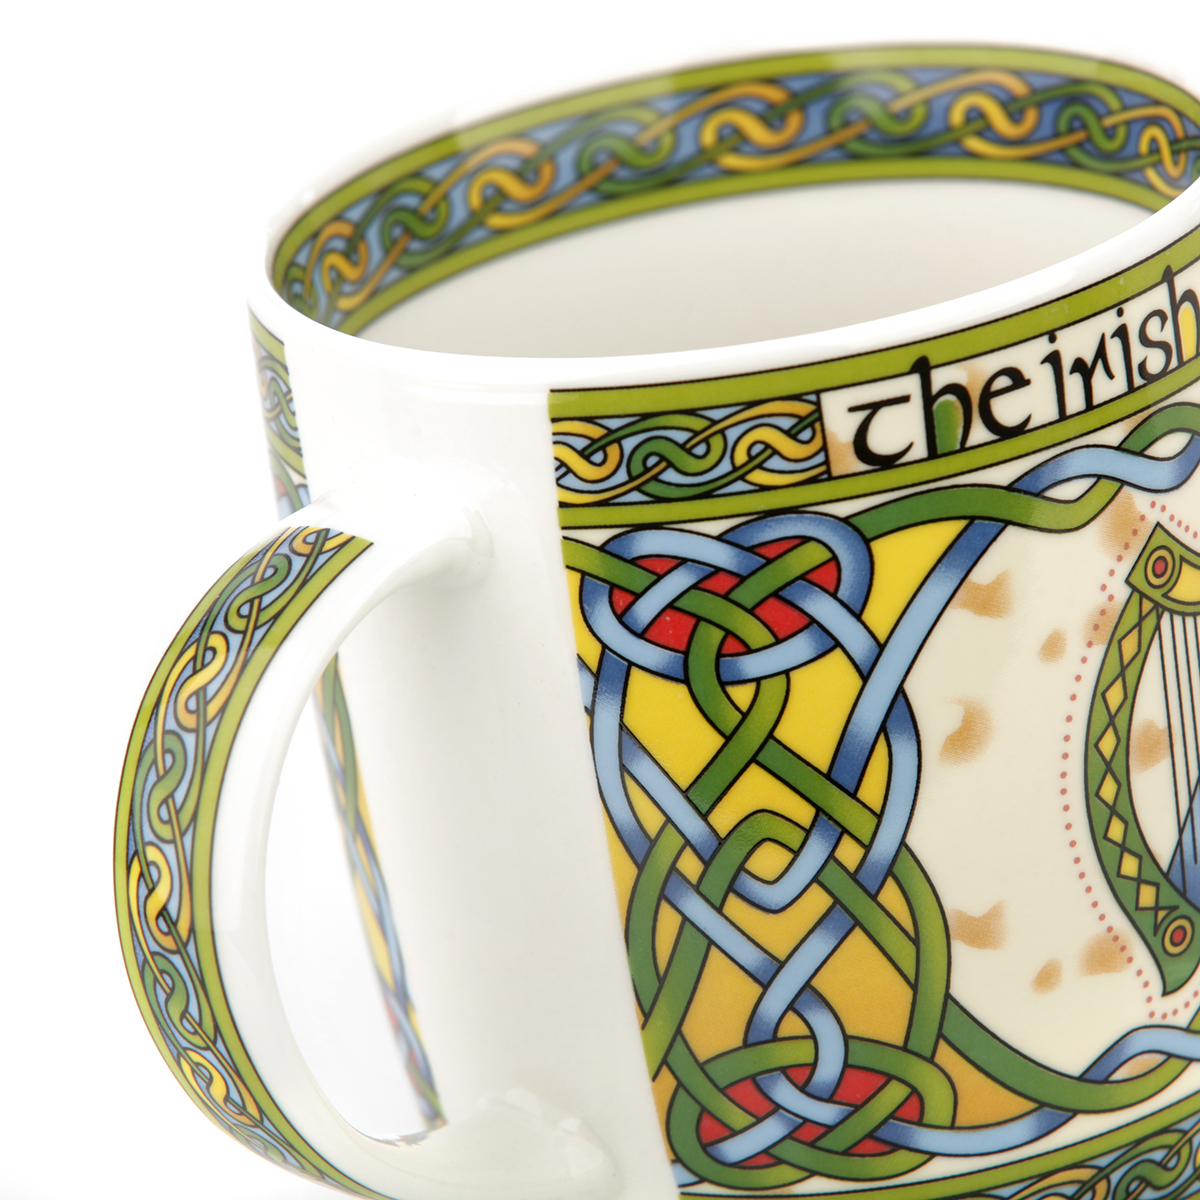 The Irish Harp Mug - Kaffeebecher mit irischer Harfe & keltischem Muster